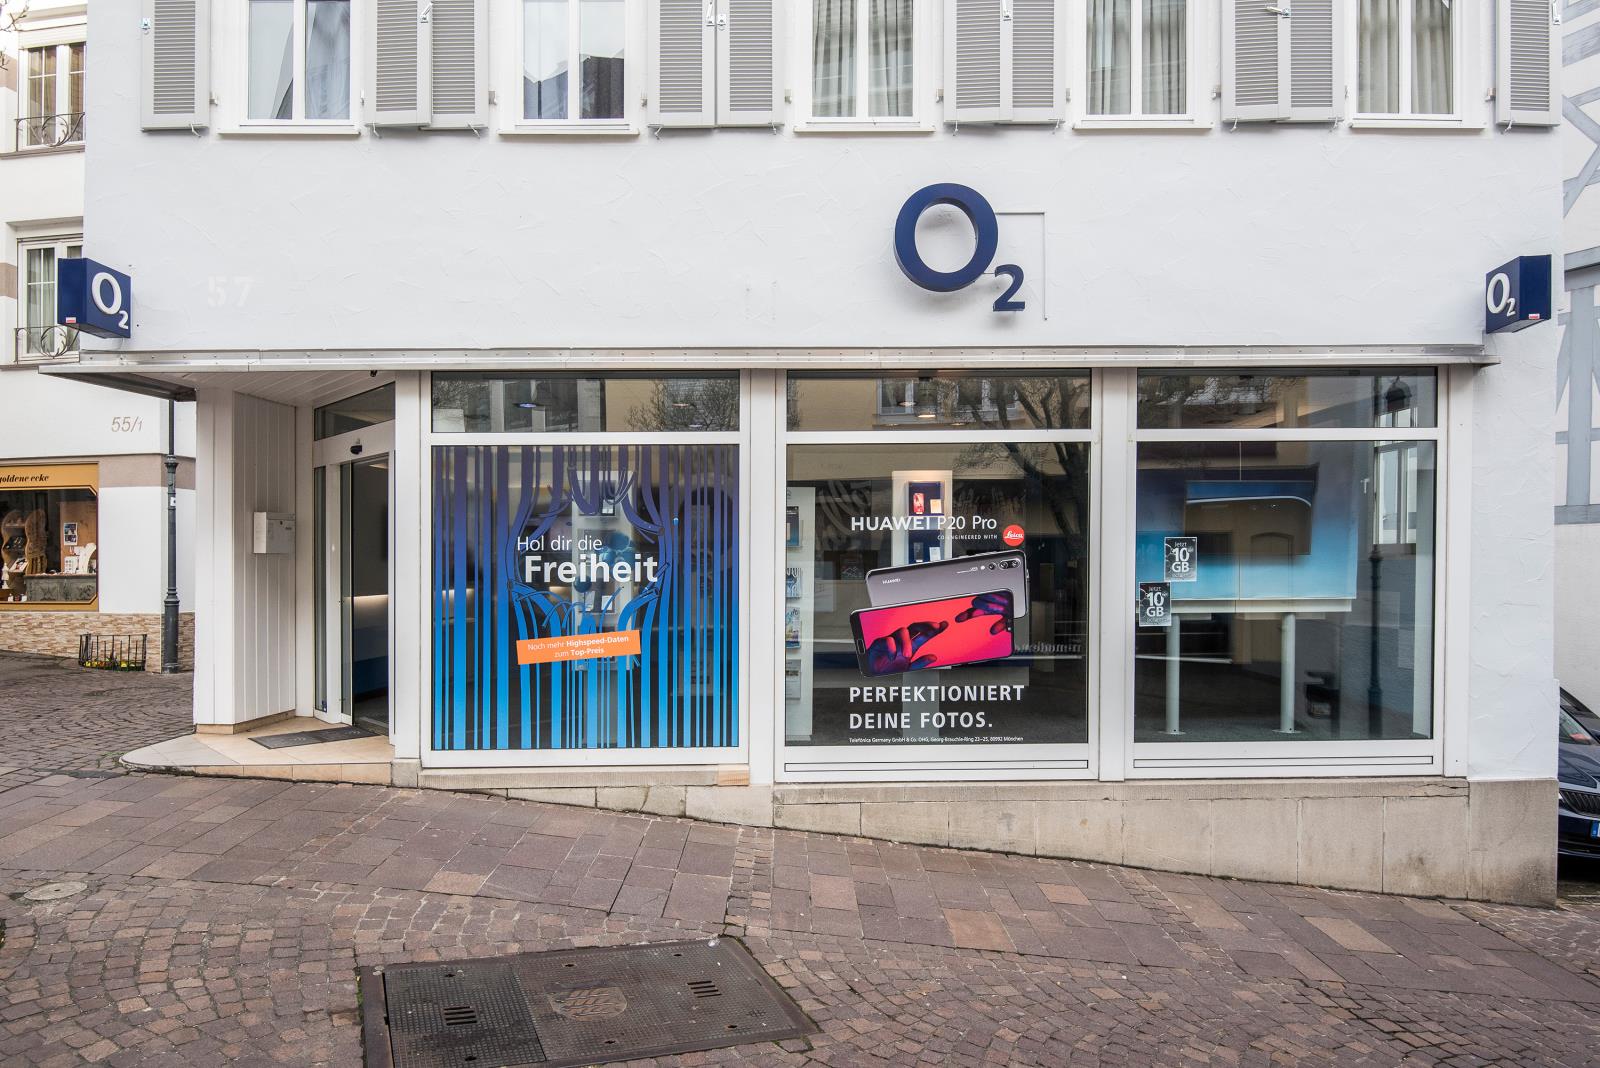 o2 Shop, Lange Str. 57 in Waiblingen